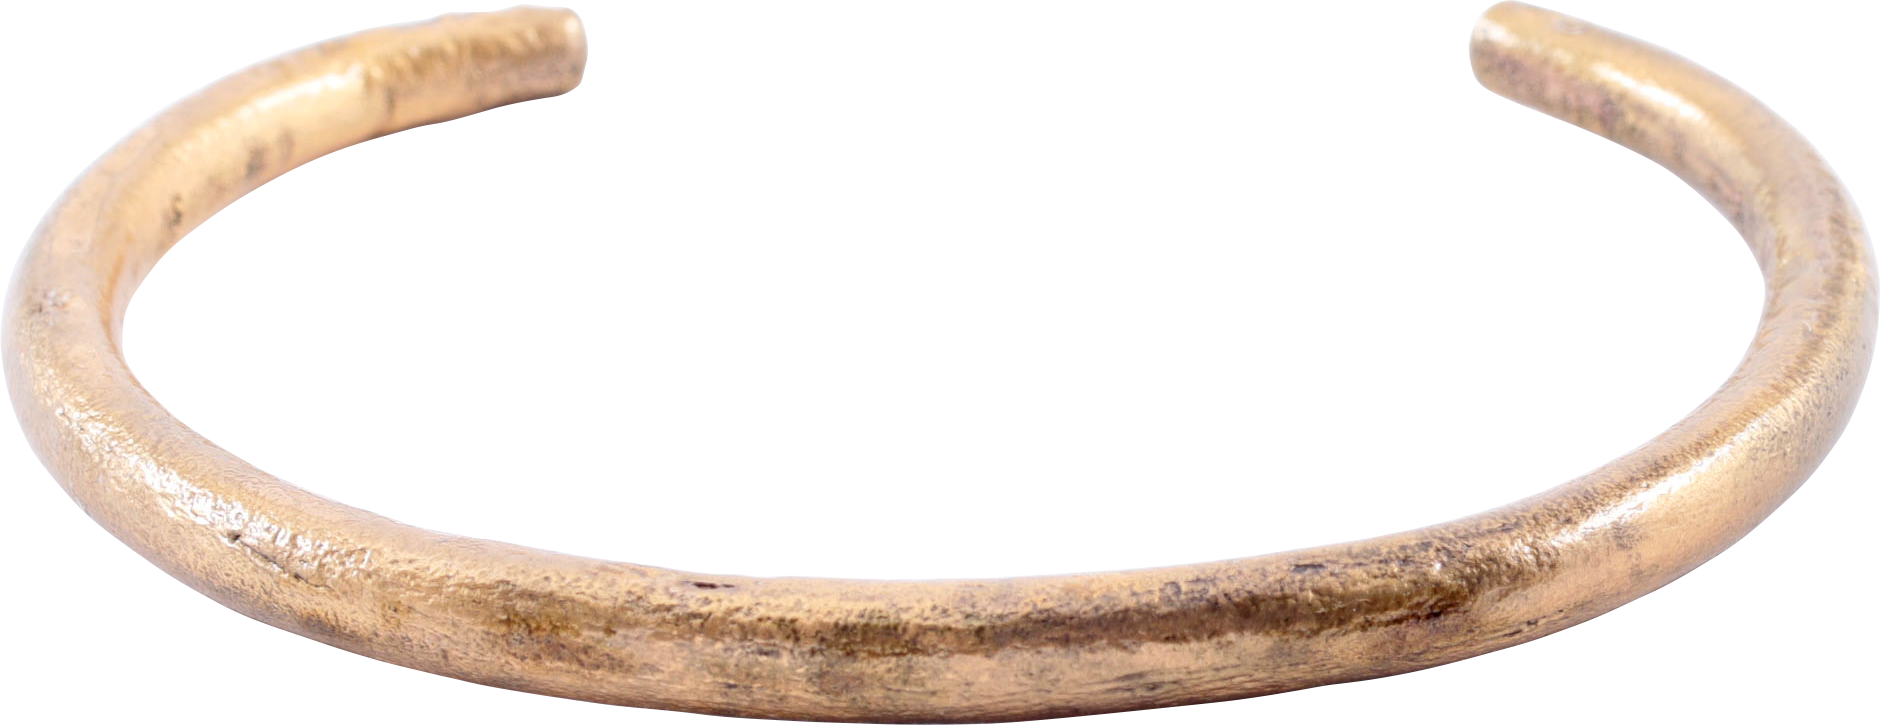 VIKING WARRIOR’S BRACELET, 850-1050 AD - Picardi Jewelry